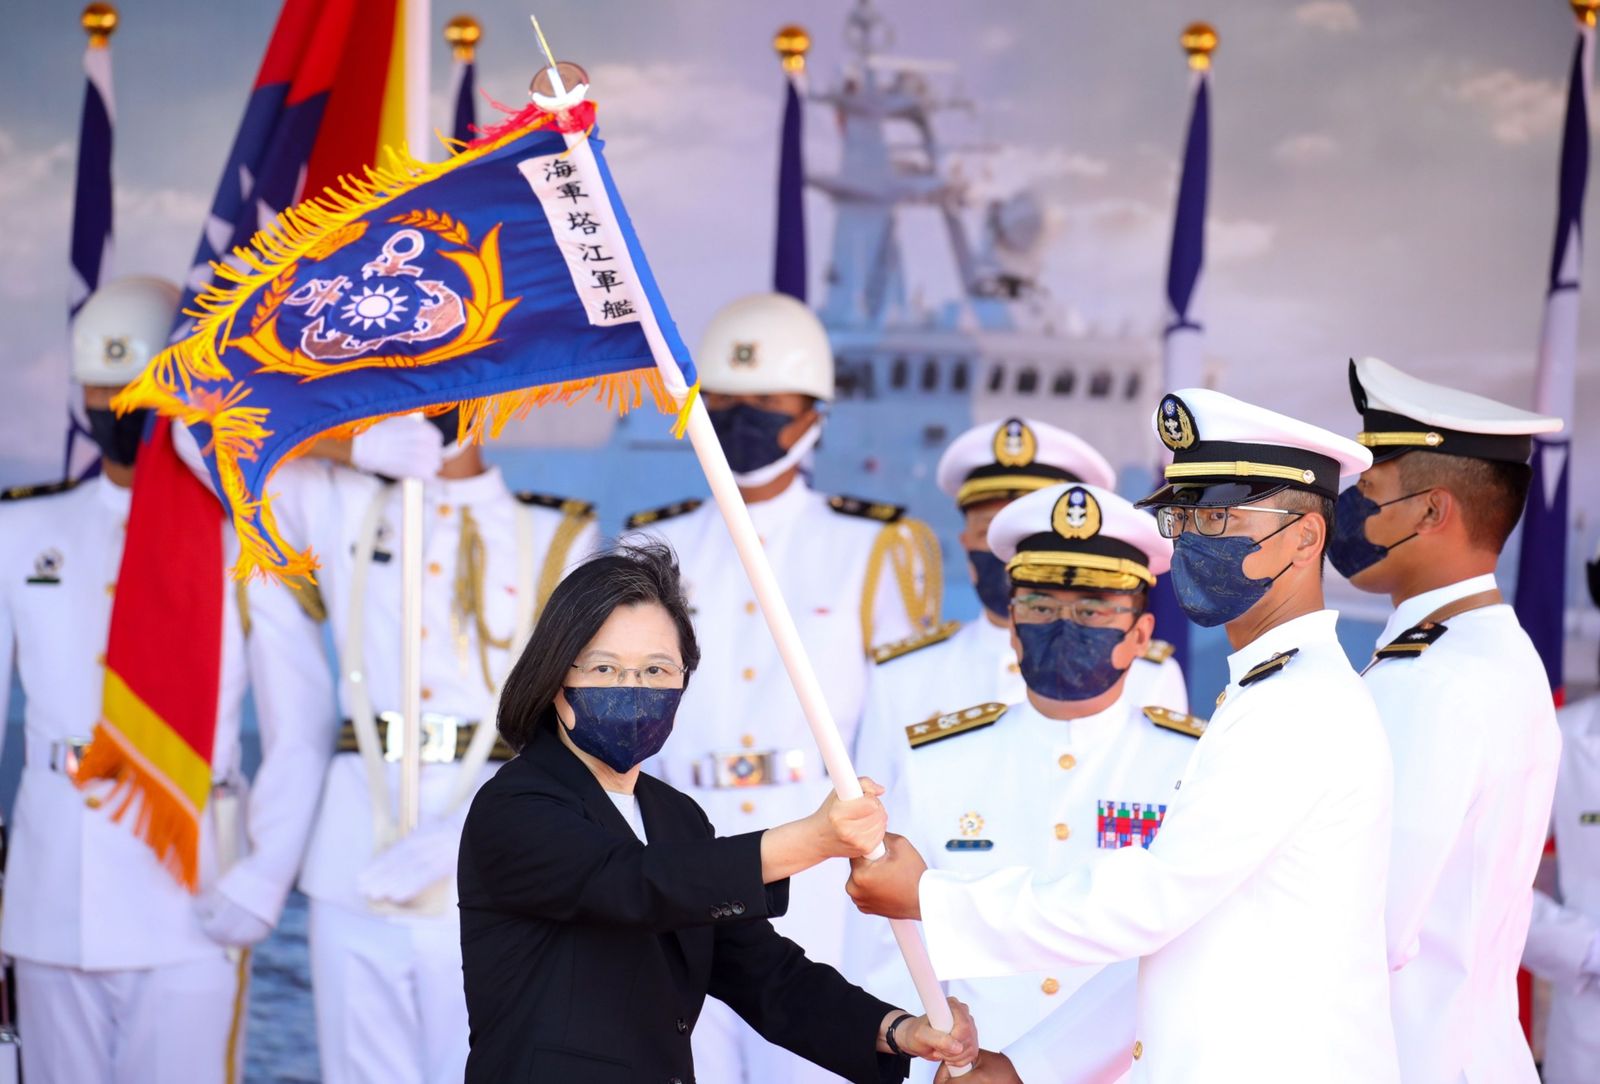 الرئيسة التايوانية تساي إنغ ون خلال تدشين سفينة حربية جديدة في مقاطعة ييلان - 9 سبتمبر 2021 - Bloomberg